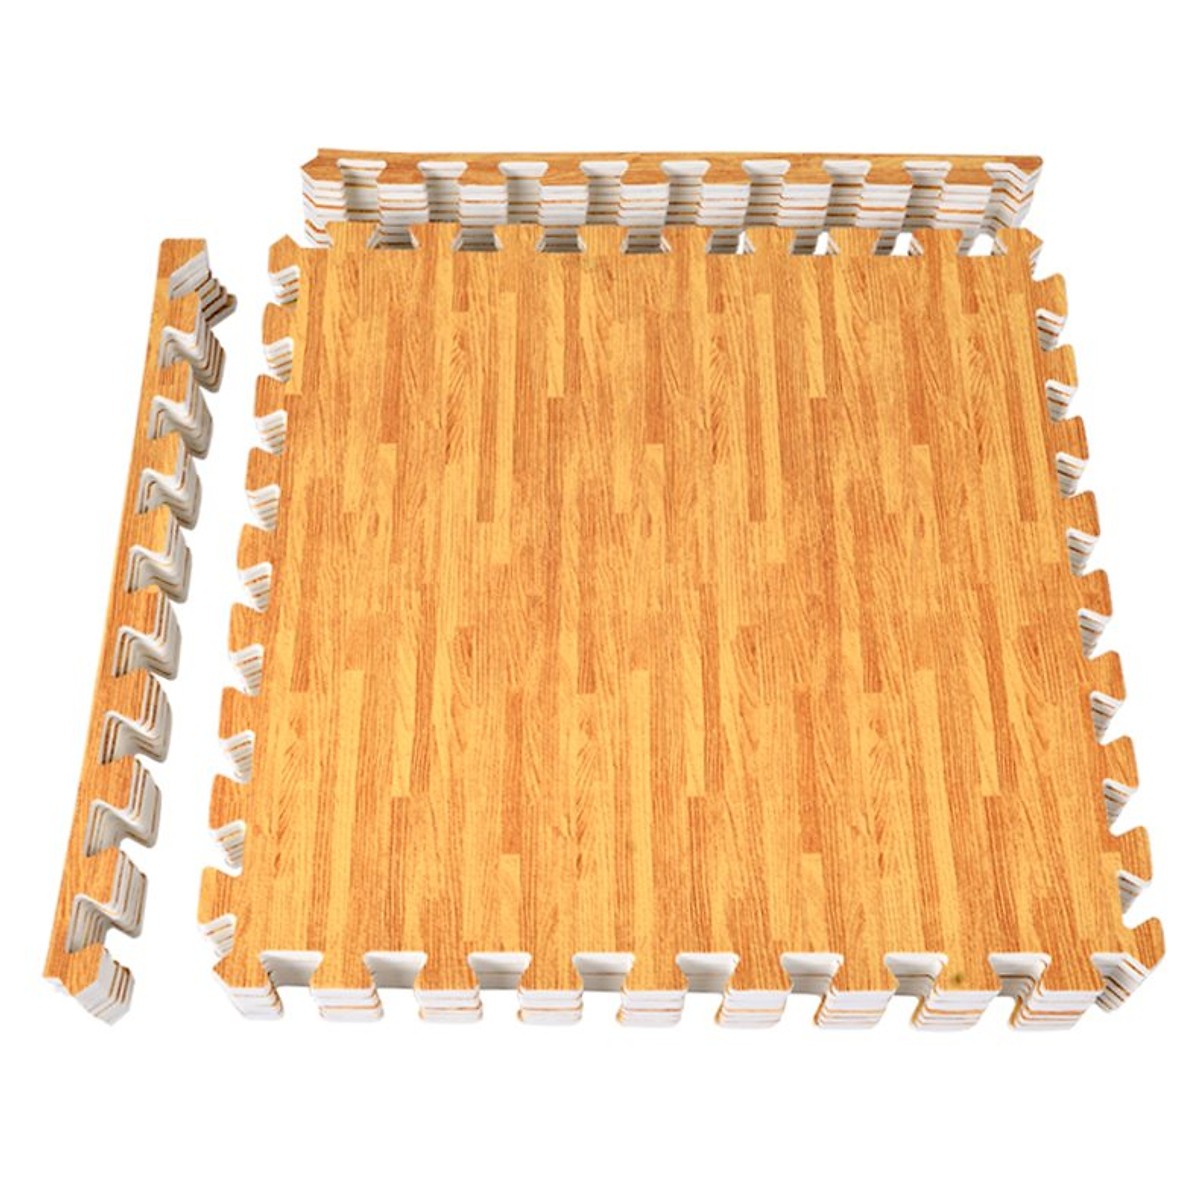 Bộ 9 Miếng thảm xốp vân gỗ lót sàn 42*42cm